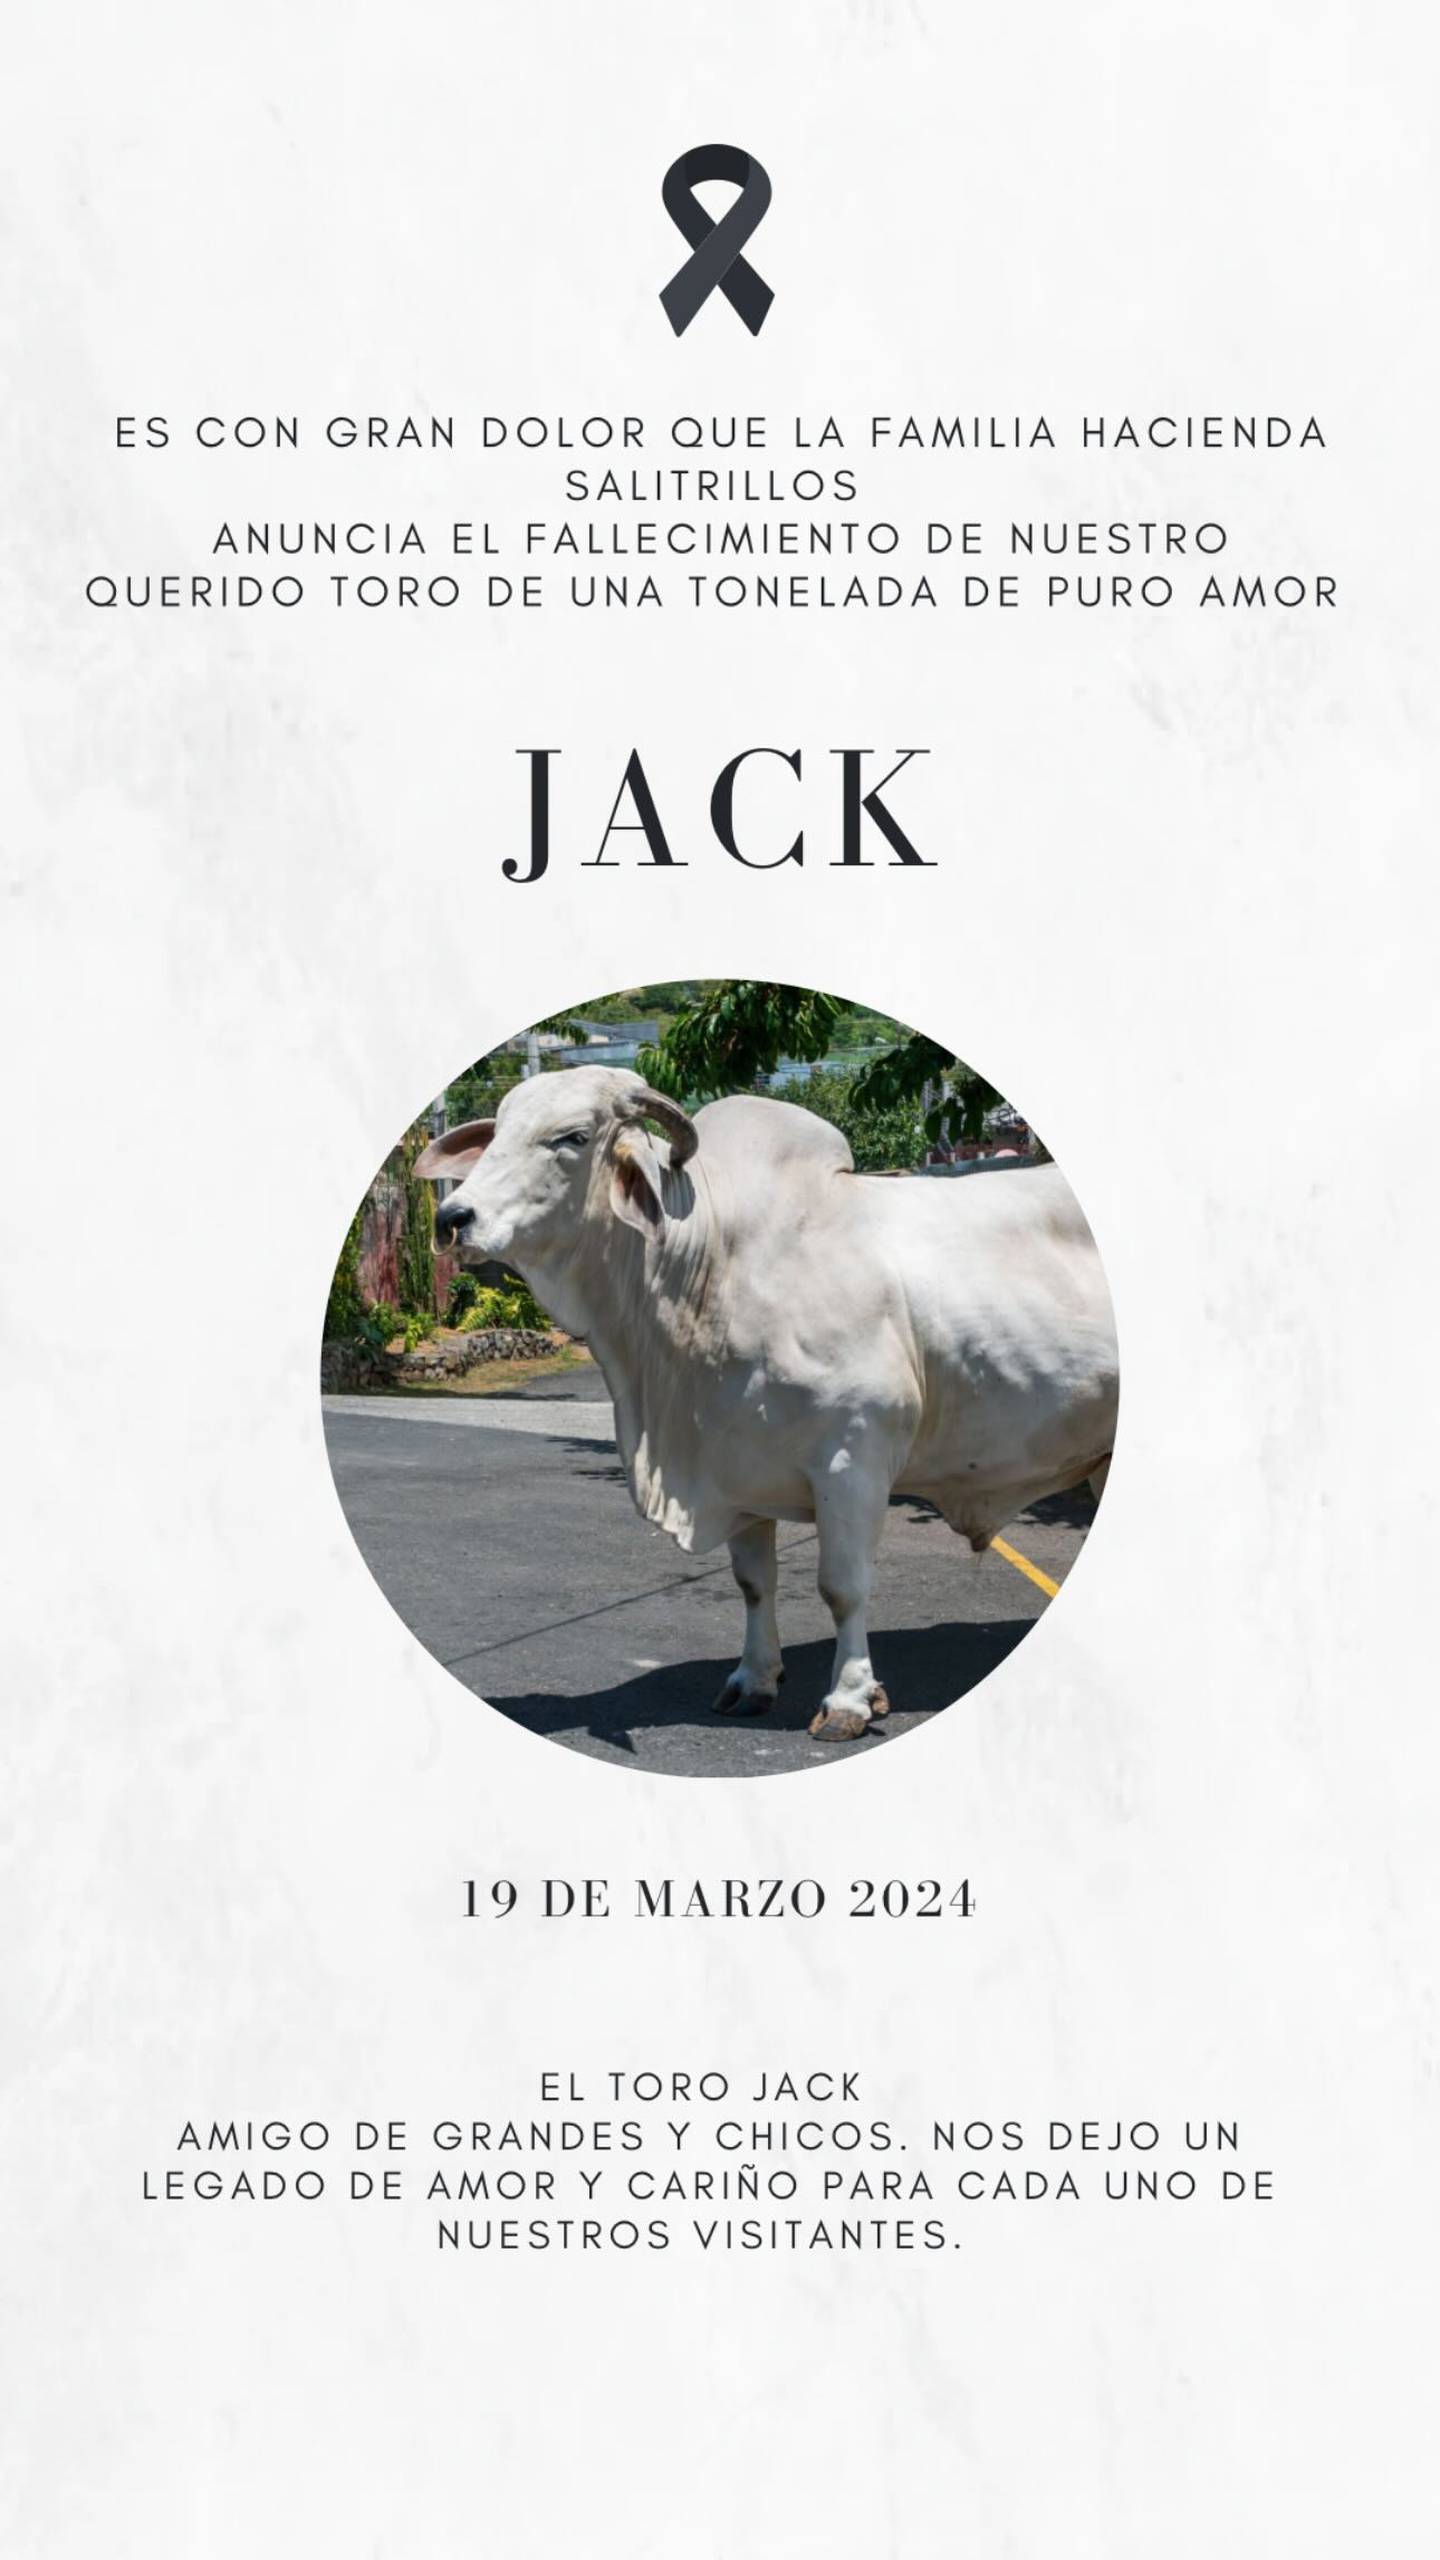 Toro Jack
Hacienda Salitrillos